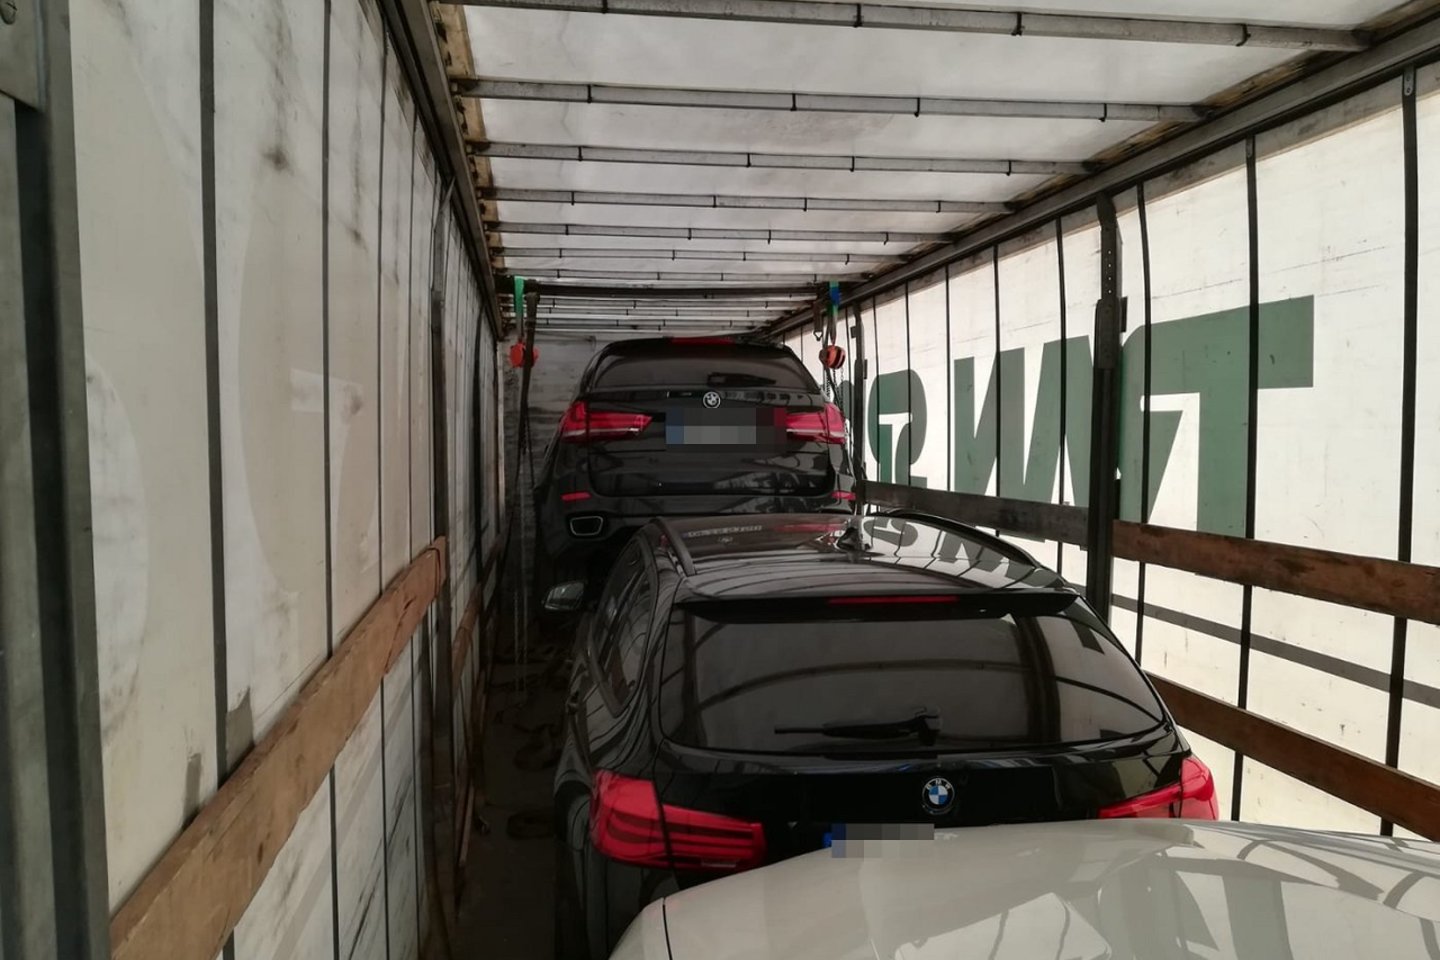 Lenkijos policijos pareigūnai sulaikė tris vogtus BMW markės automobilius vilkiku vežusį lietuvį.<br> Lenkijos policijos nuotr.